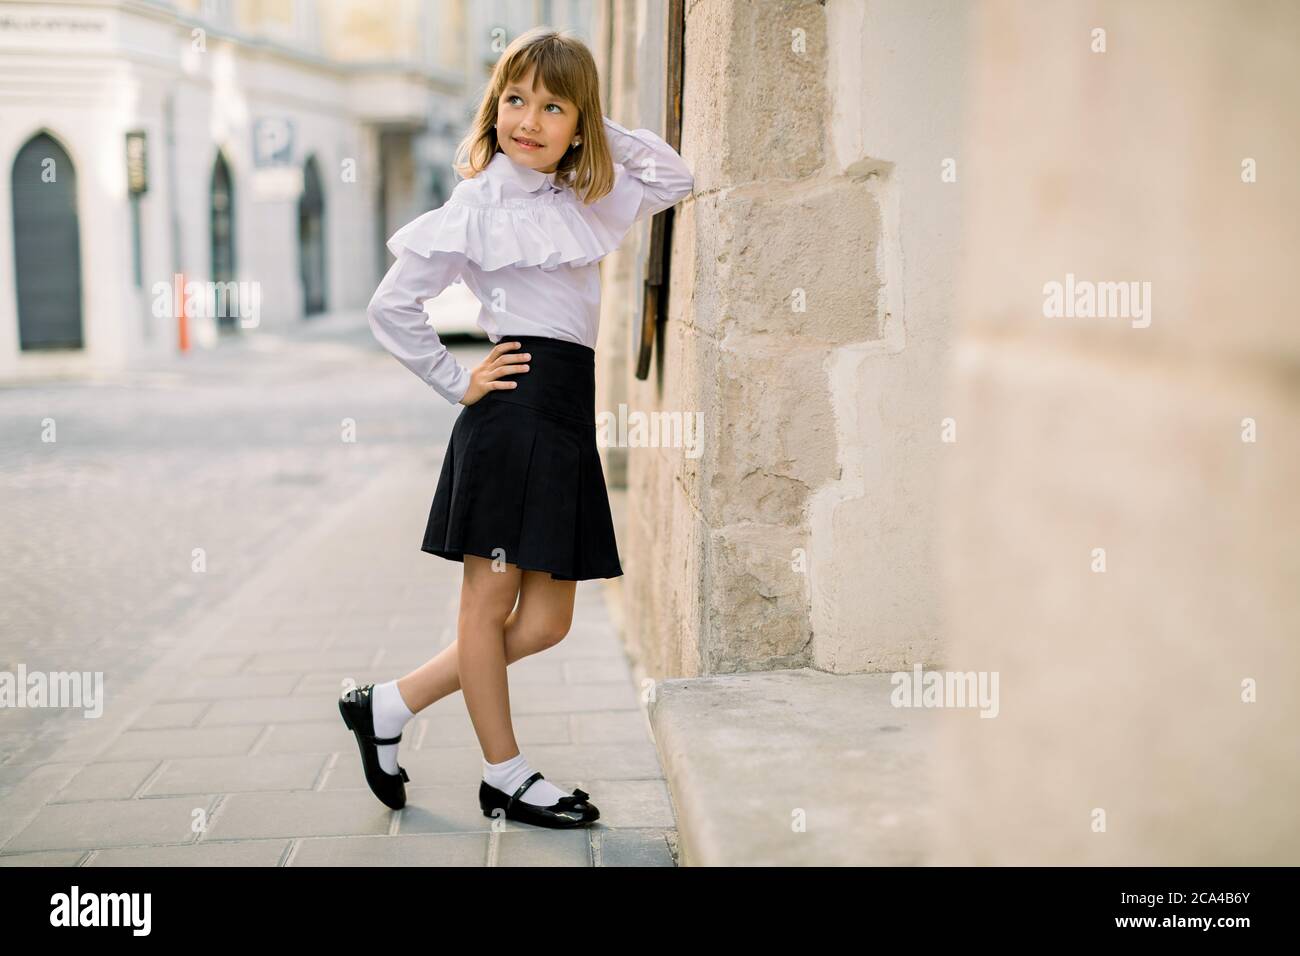 Retrato de moda libre de encantadora niña en blusa blanca y falda negra, posando apoyado en la pared hermoso edificio de la antigua en la antigüedad Fotografía de